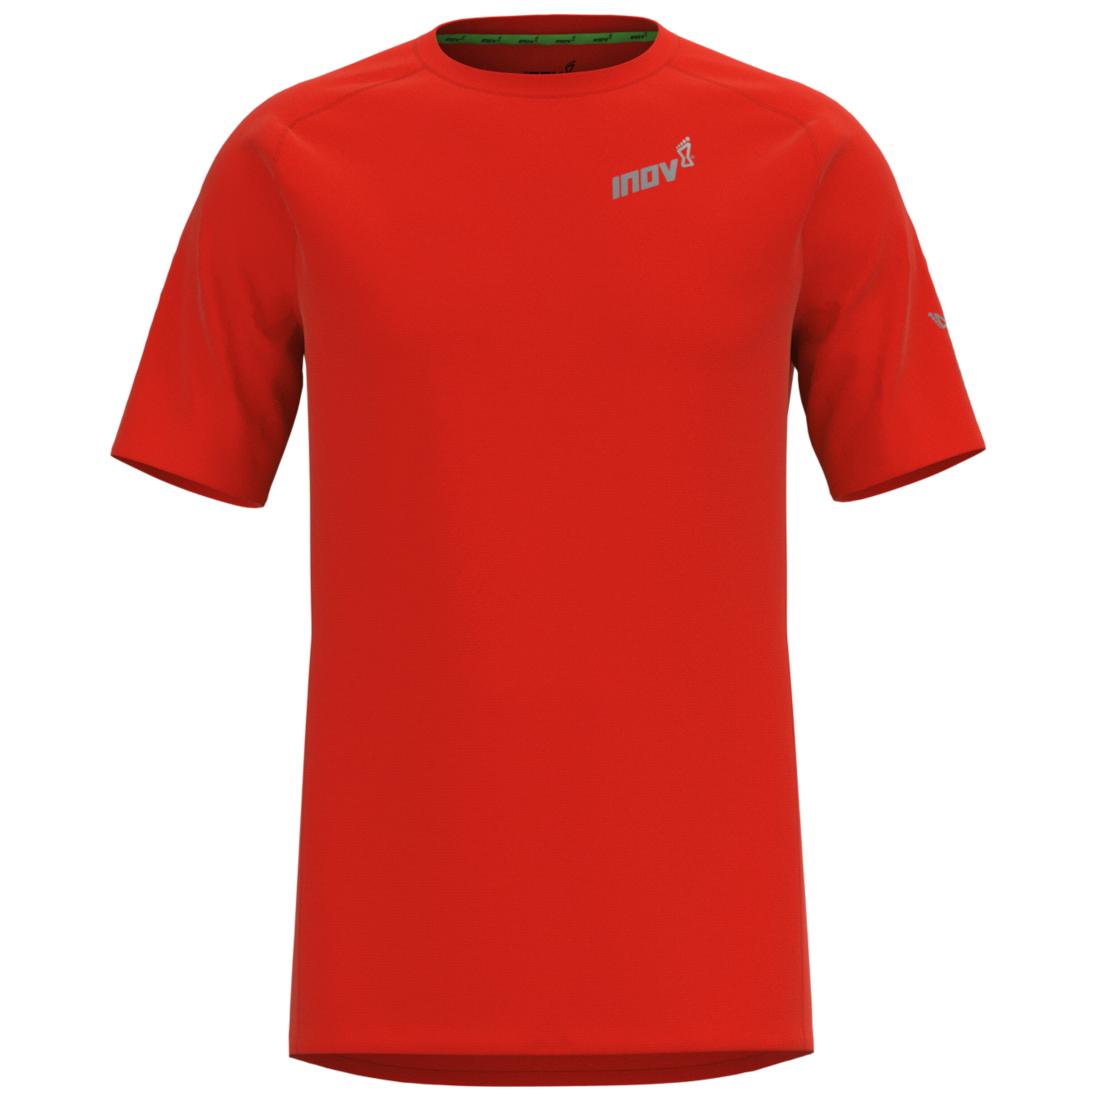 Inov-8 Base Elite SS Tee, rood heren T-shirt